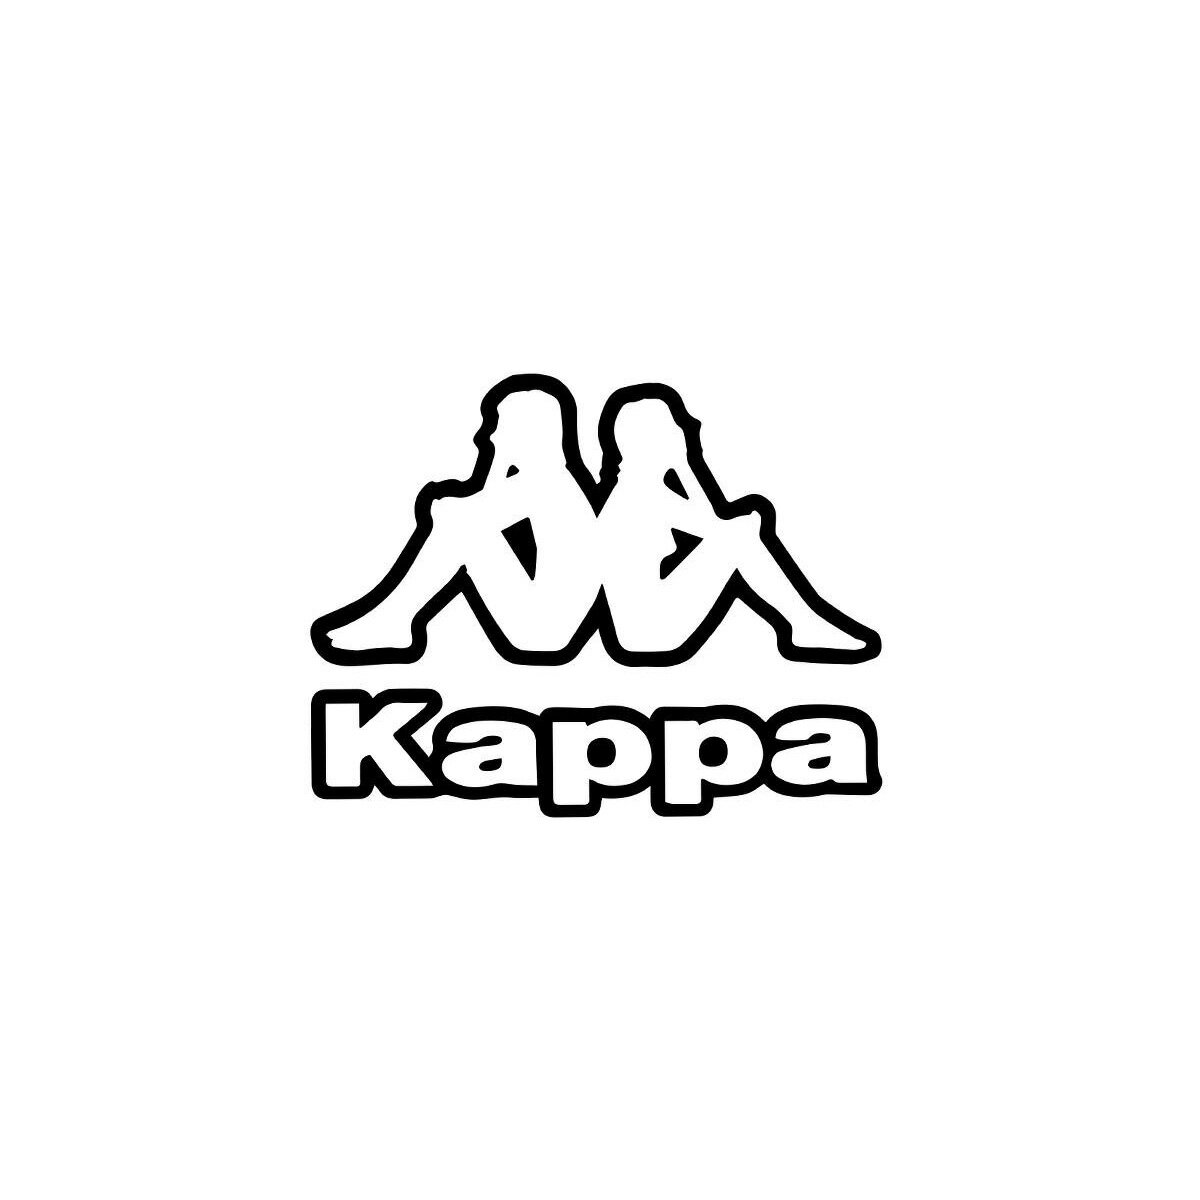 送料無料 タケスポ限定 半額以下 カッパ スウェット 上下 メンズ Kappa パーカー パンツ フルジップ イタリア ITALIA ビッグロゴ KPO21080TS あす楽 5/o| セットアップ 上下セット 大きいサイズ 有 2